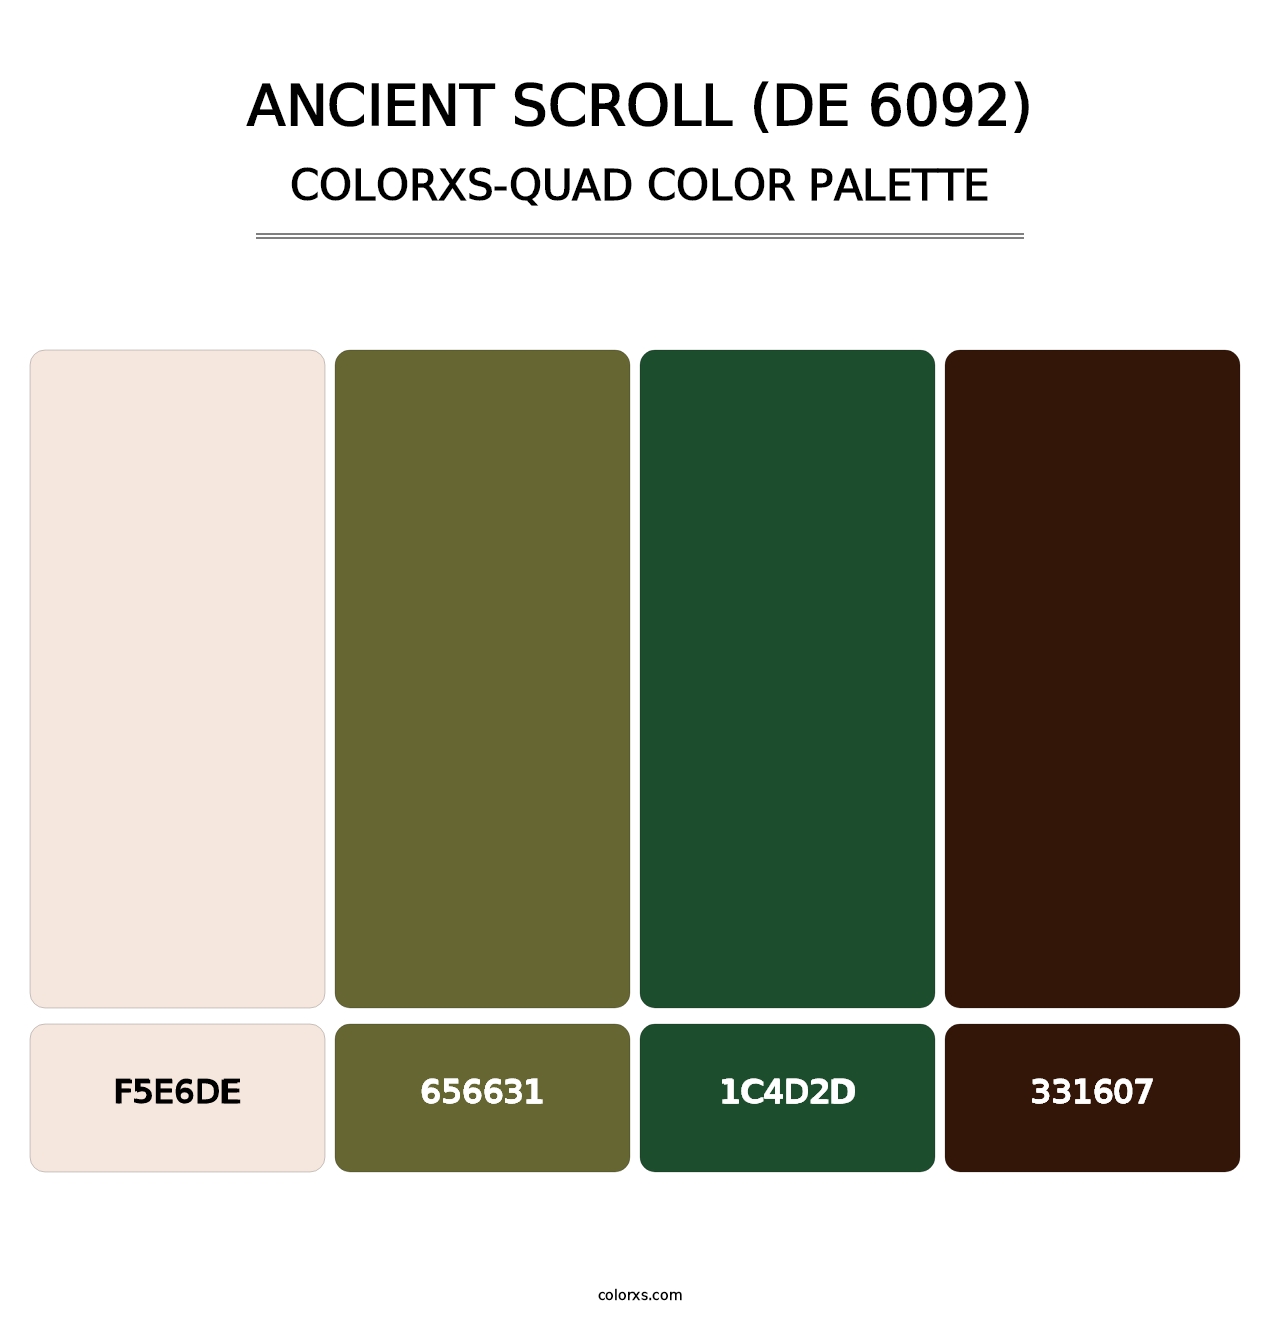 Ancient Scroll (DE 6092) - Colorxs Quad Palette